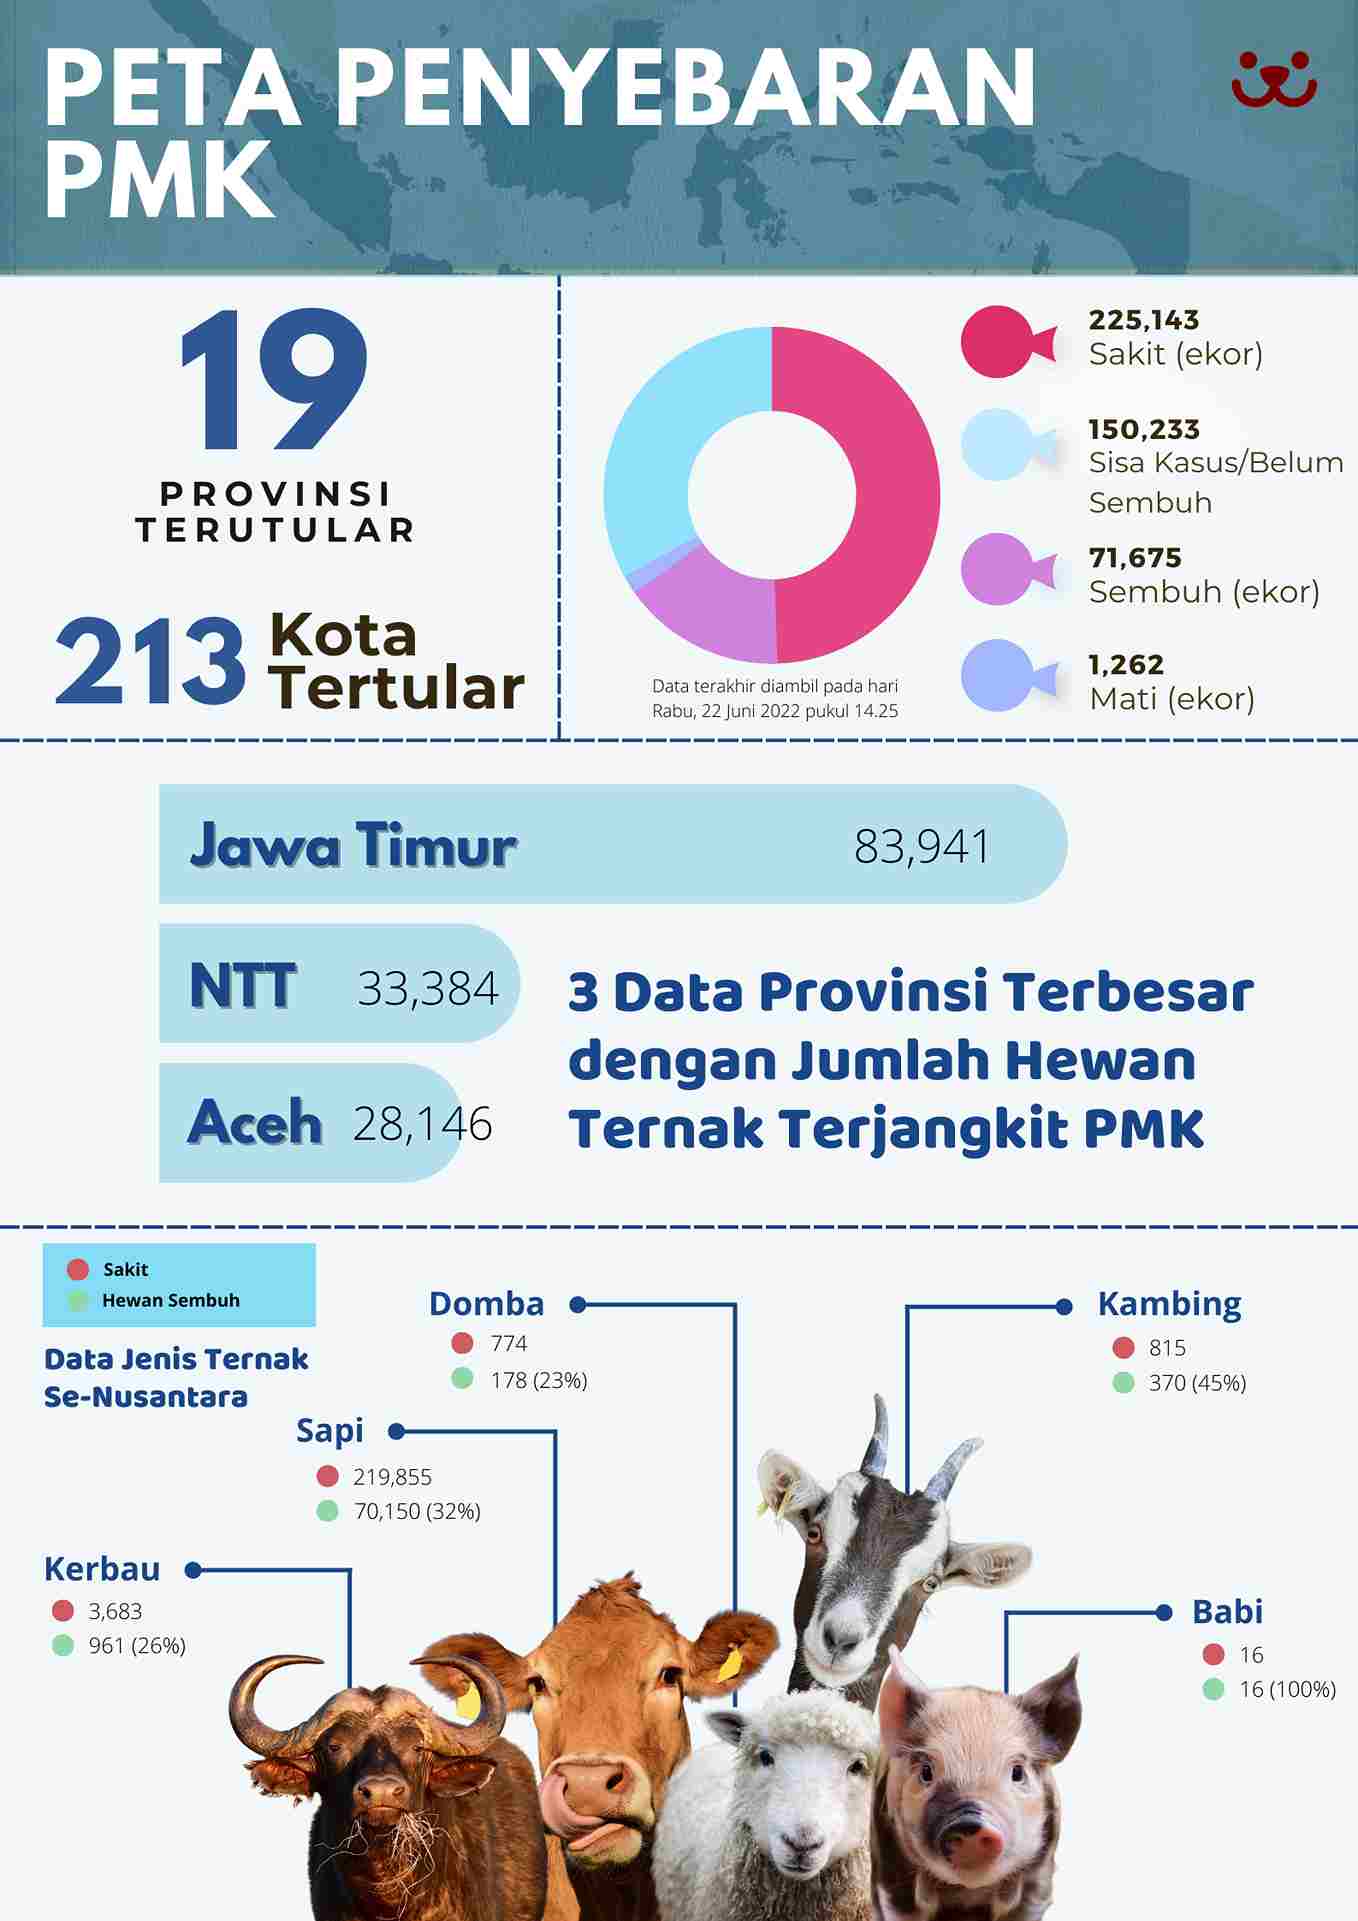 Infografis data penyebaran penyakit pmk di Indonesia